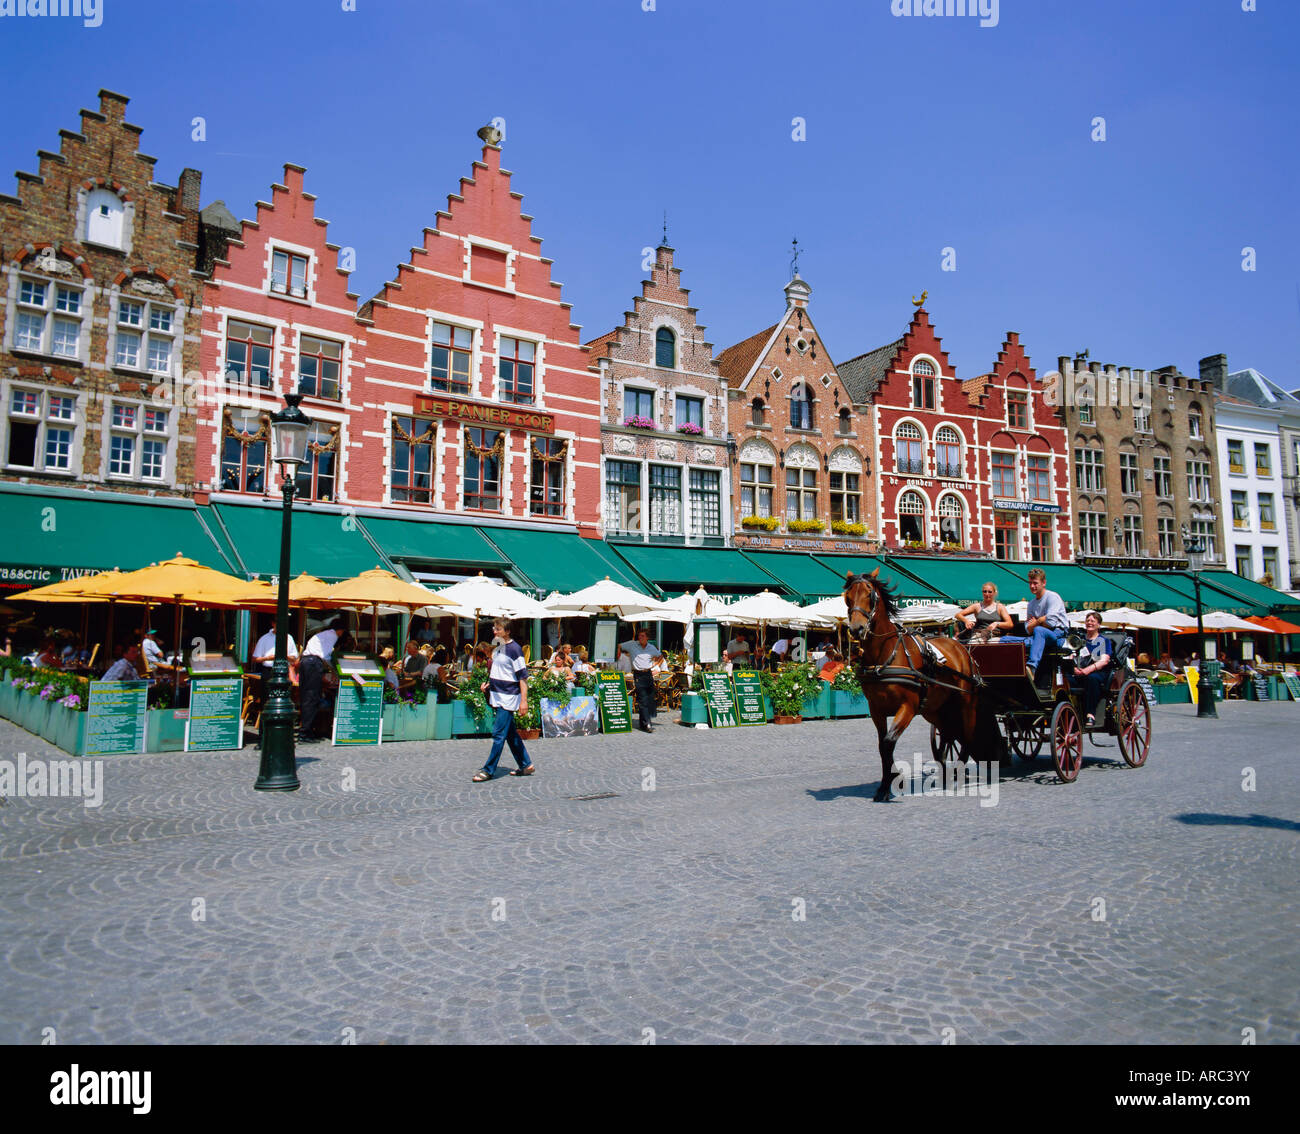 Les cafés de la place principale de la ville, Bruges, Belgique Banque D'Images